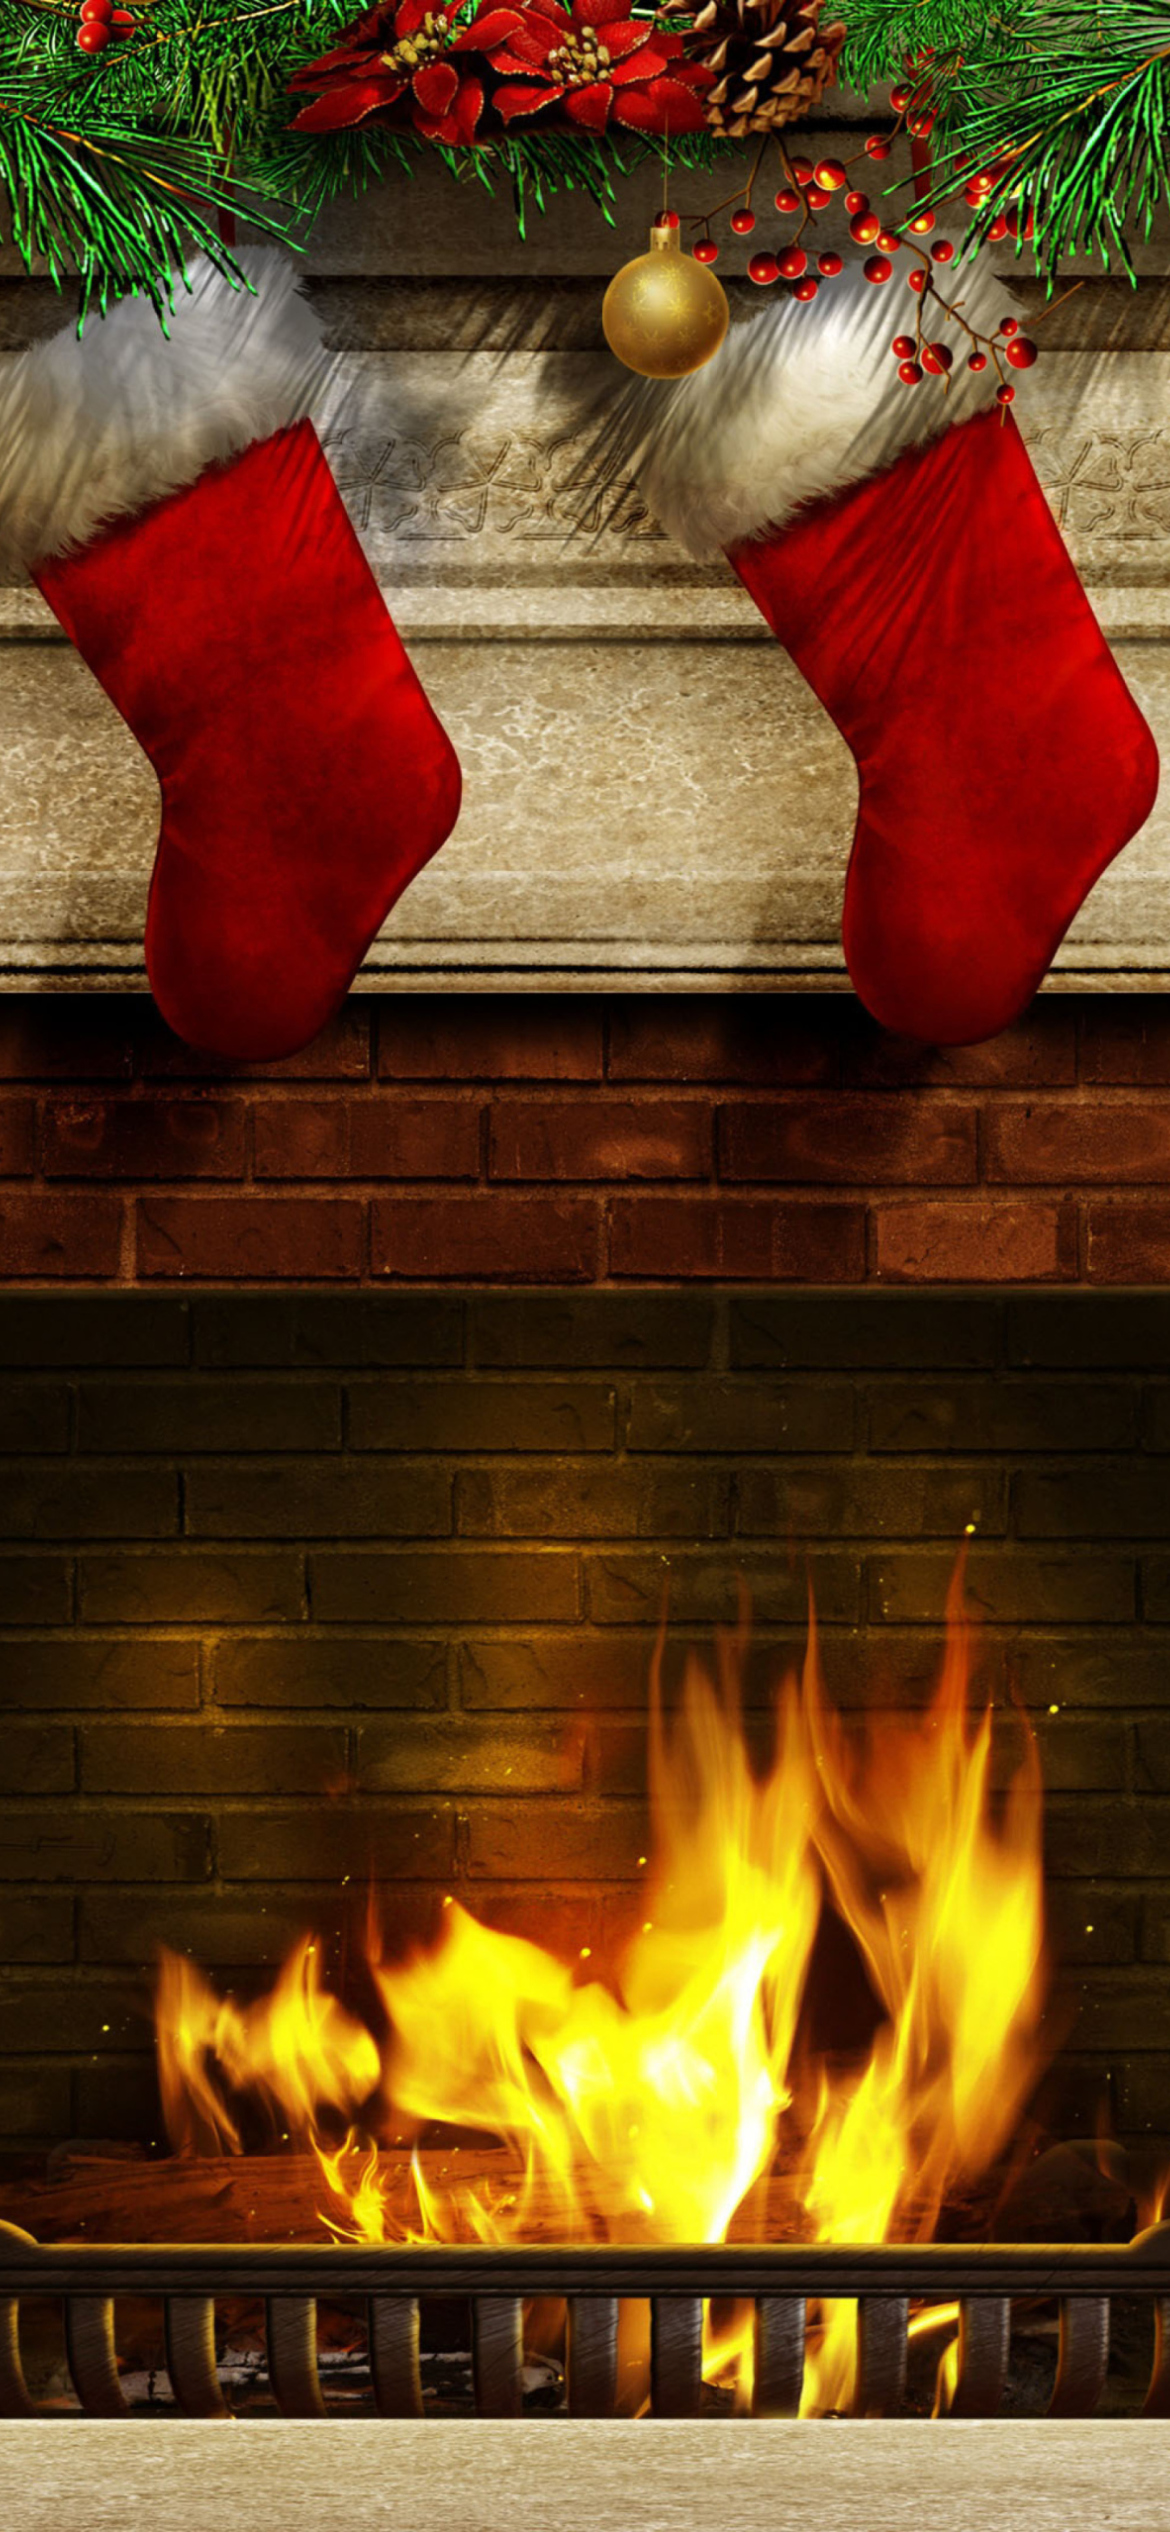 Fireplace And Christmas Socks wallpaper 1170x2532